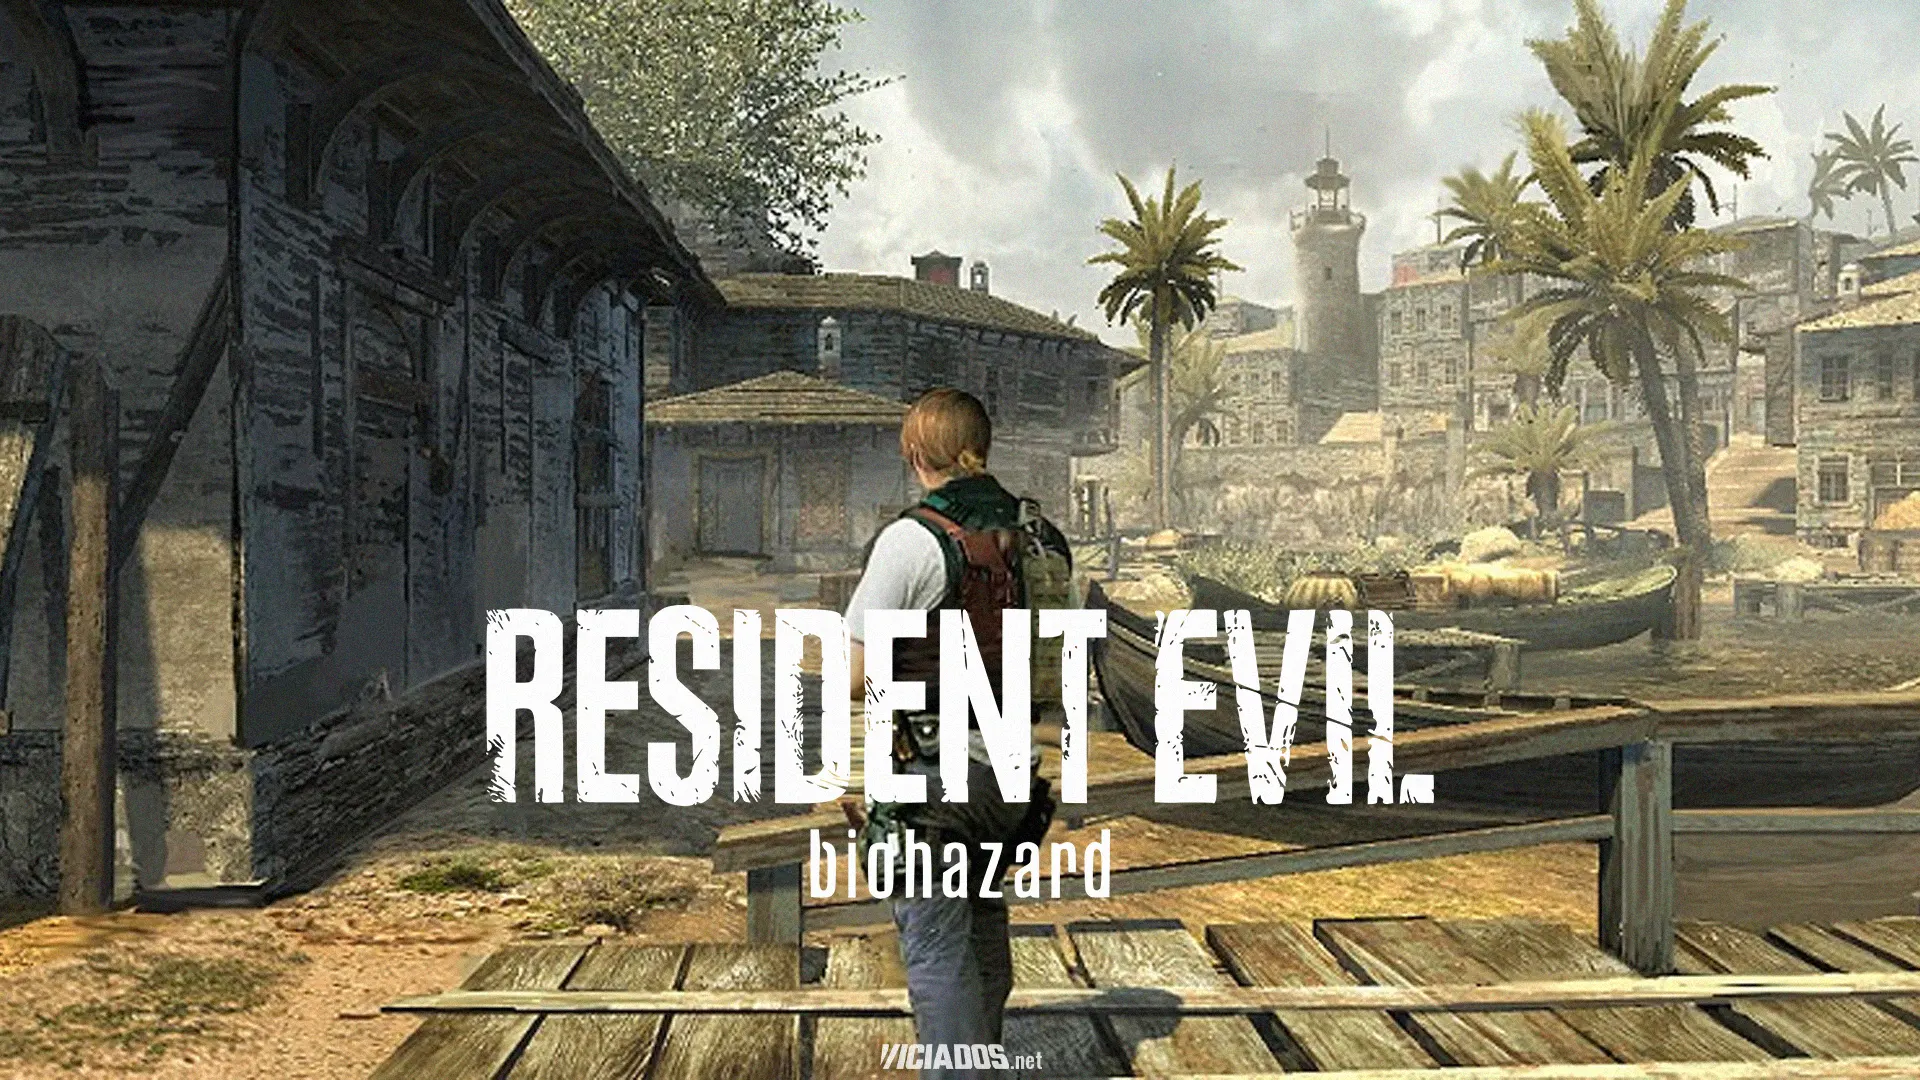 Resident Evil | Vaza imagens de jogo estilo Telltale acontecendo em Portugal 2024 Portal Viciados